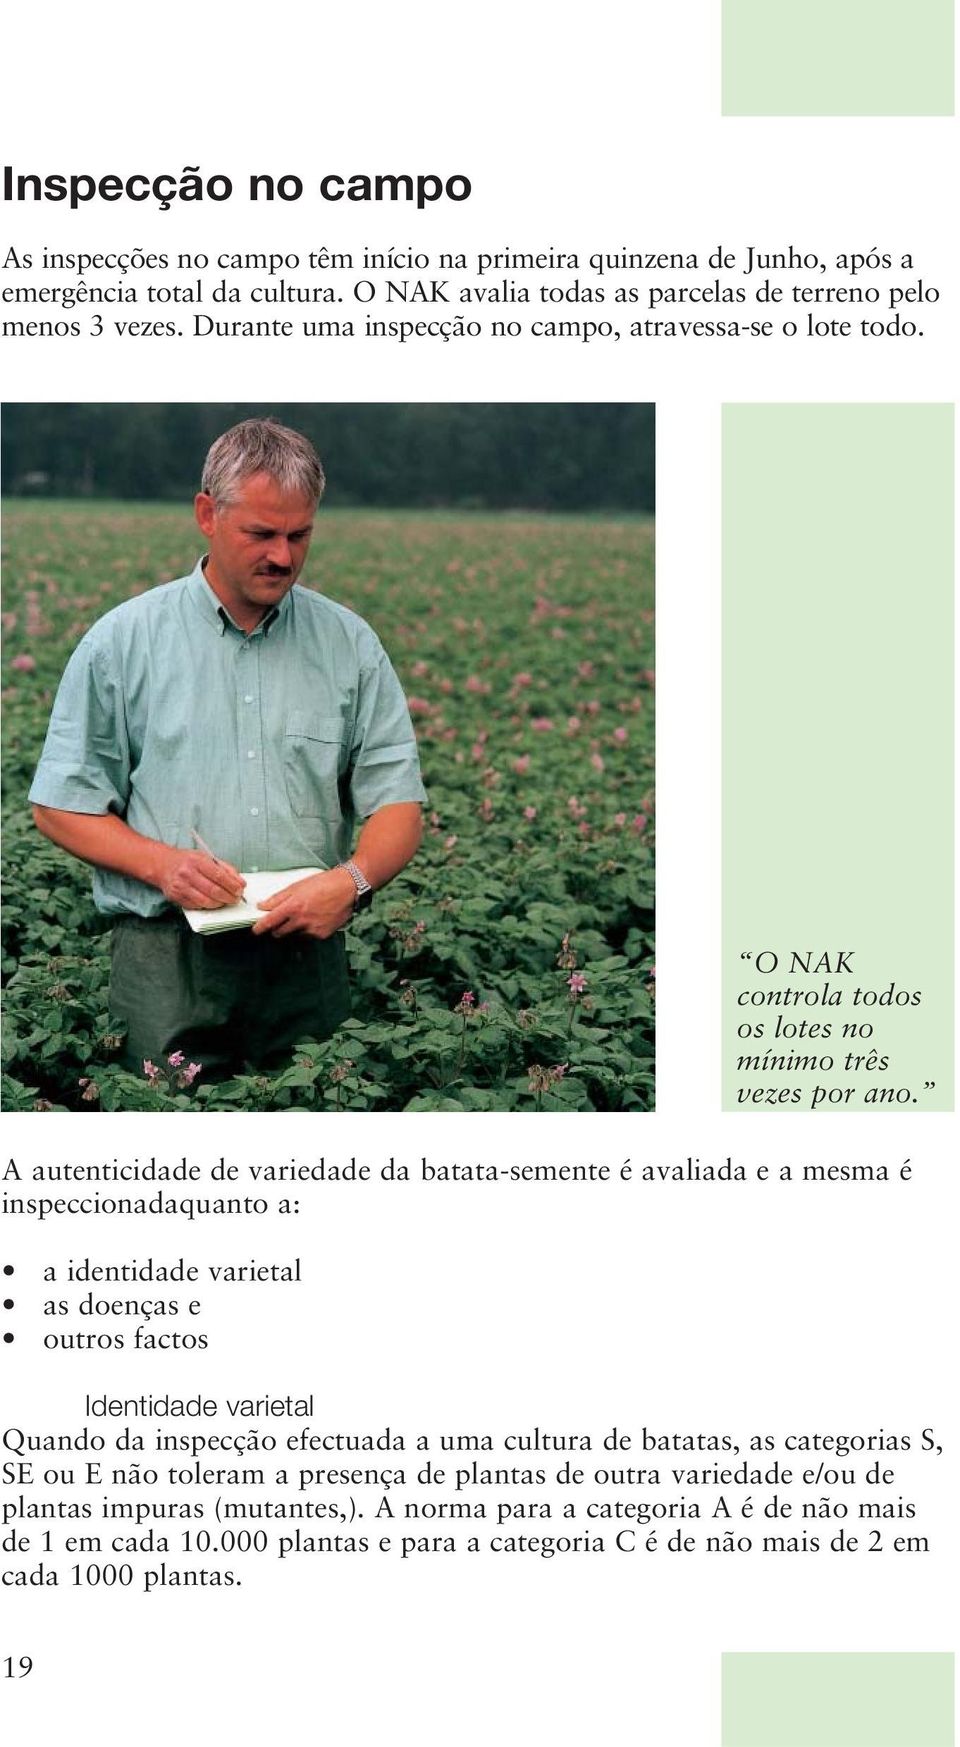 A autenticidade de variedade da batata-semente é avaliada e a mesma é inspeccionadaquanto a: a identidade varietal as doenças e outros factos O NAK controla todos os lotes no mínimo três